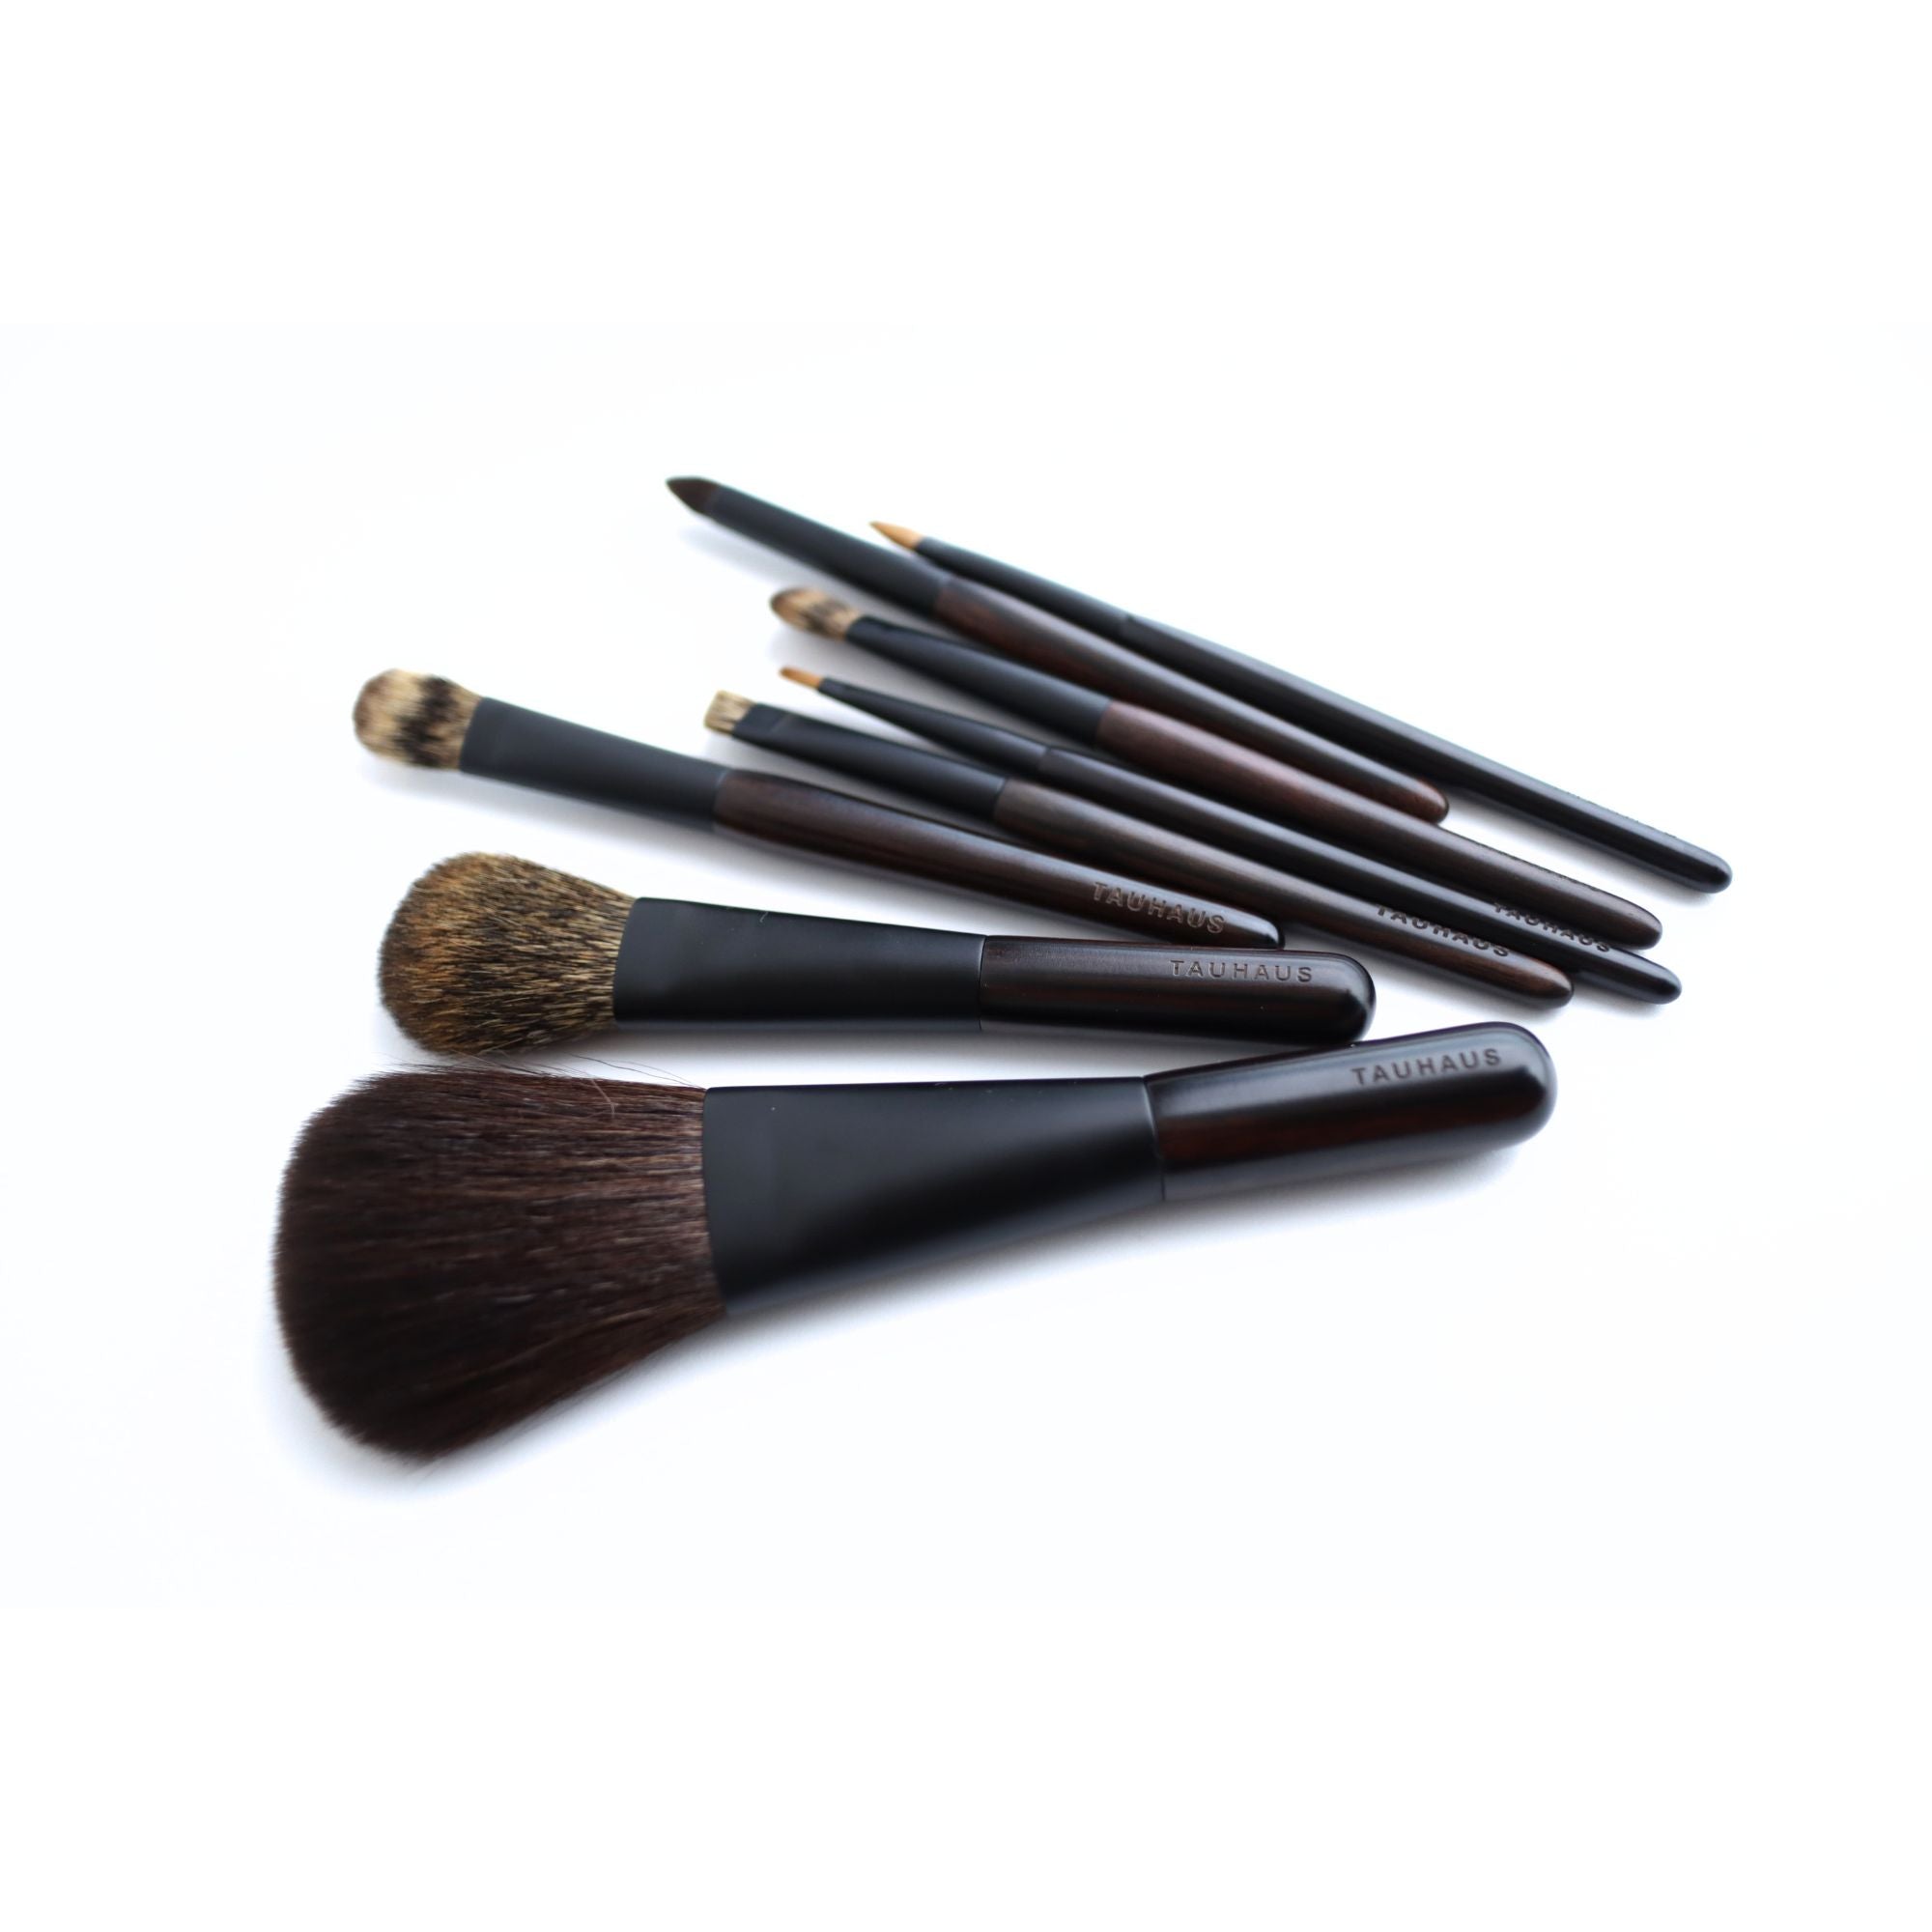 Tauhaus EH-03 Large Eyeshadow Brush, Ode Series - Fude Beauty, Japanese Makeup Brushes